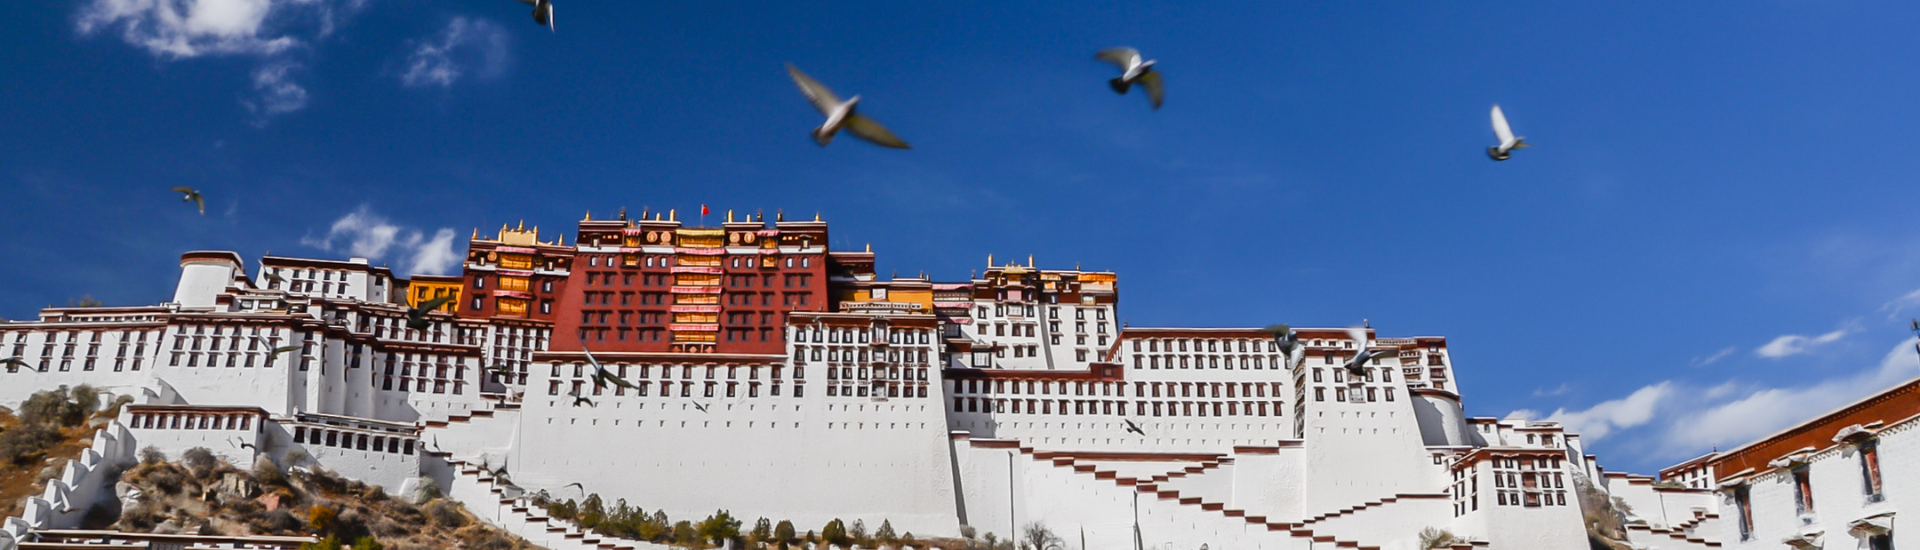 Tour Du Lịch Trung Quốc Khám Phá Tây Tạng 8 Ngày 7 Đêm